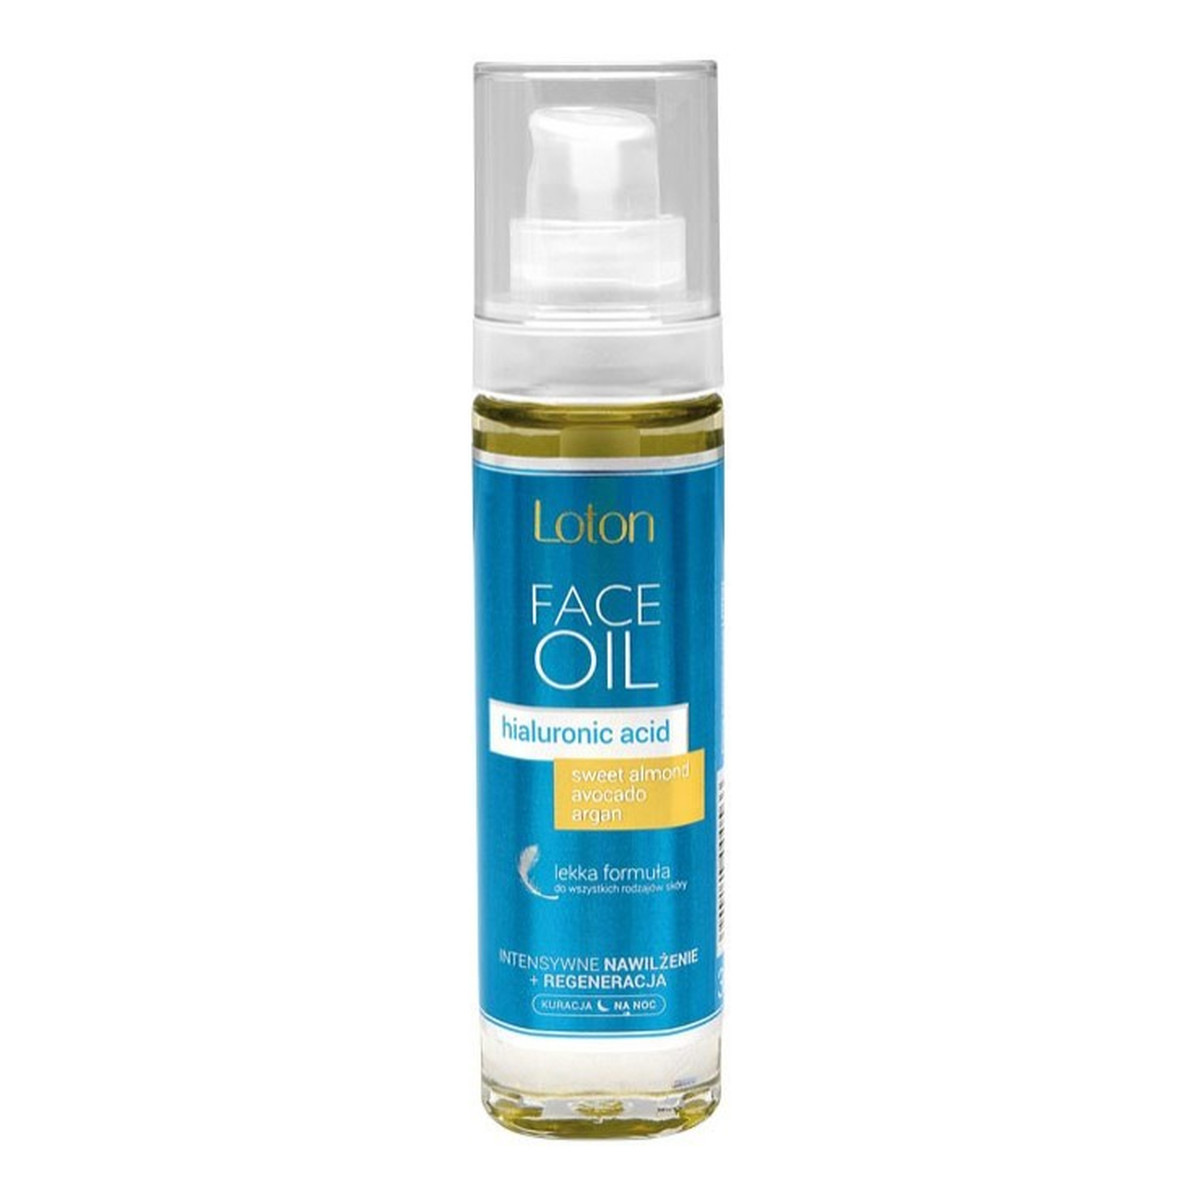 Loton Spa&Beauty Face Oil Olejek Do Twarzy Szyi i Dekoltu Haluronic Acid 30ml